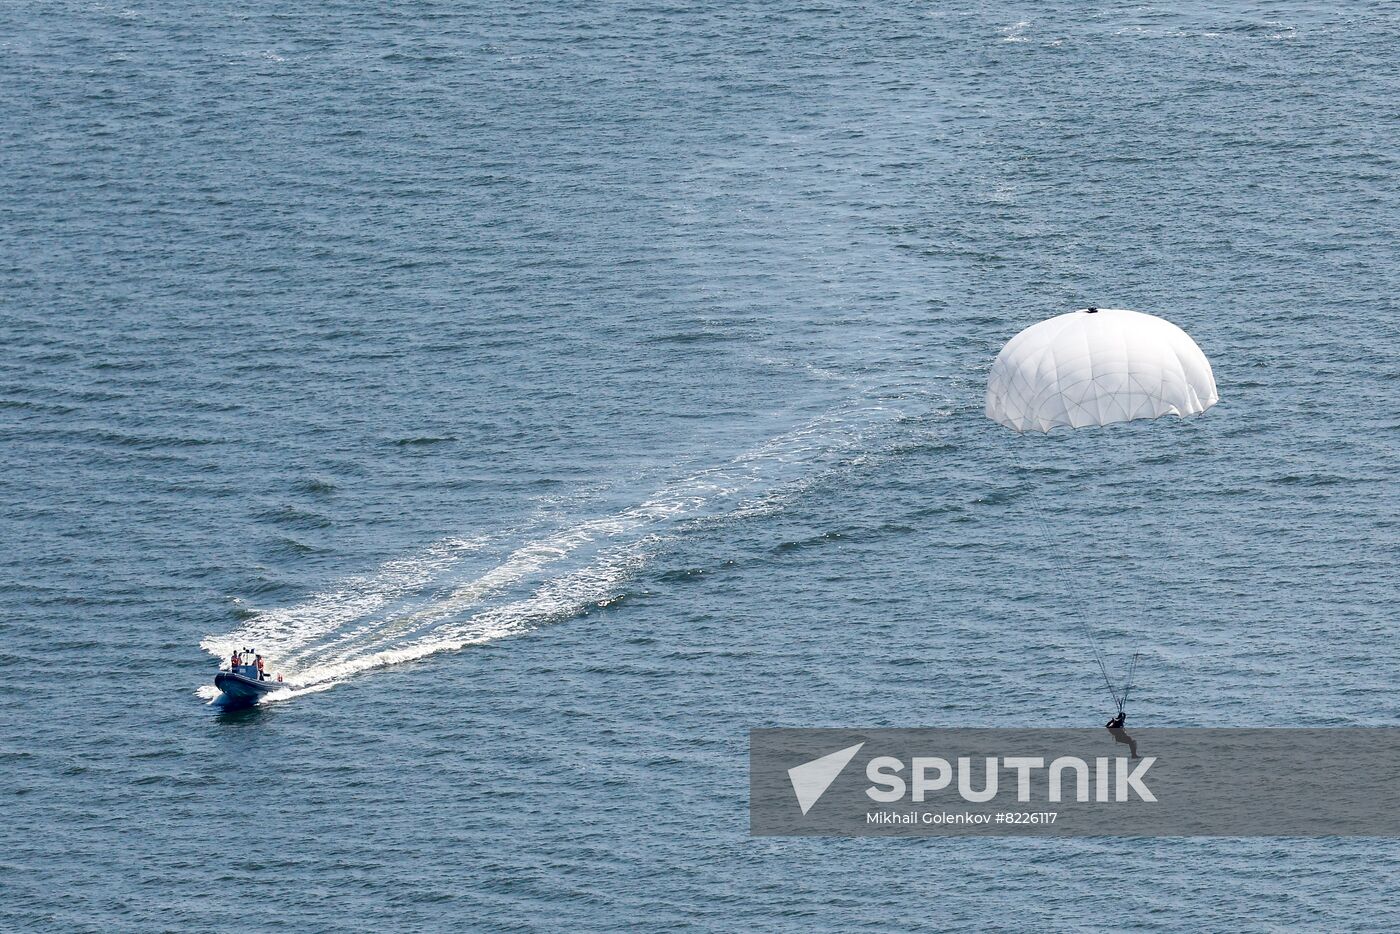 Russia Navy Baltic Fleet Drills